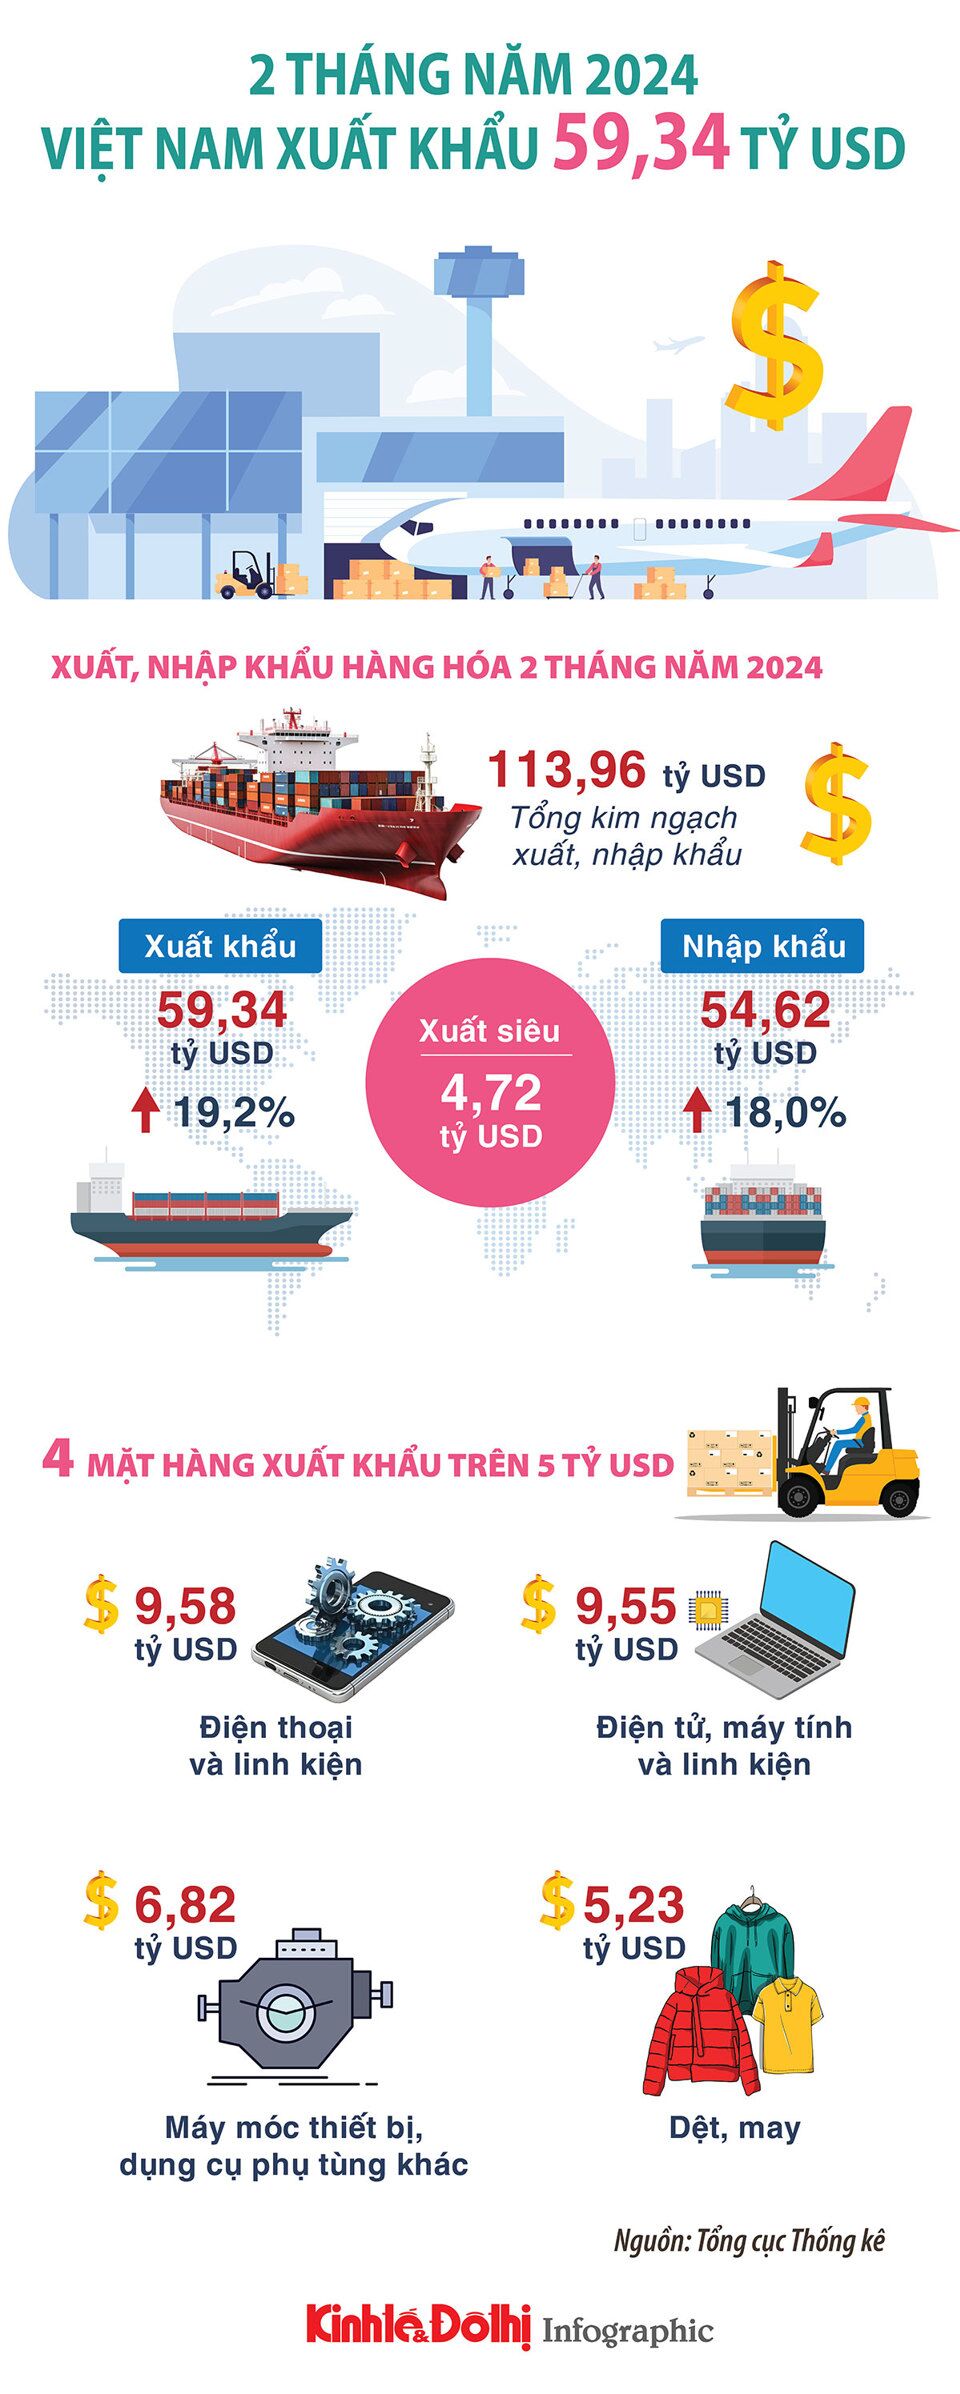 Việt Nam xuất khẩu 59,34 tỷ USD trong 2 tháng đầu năm 2024